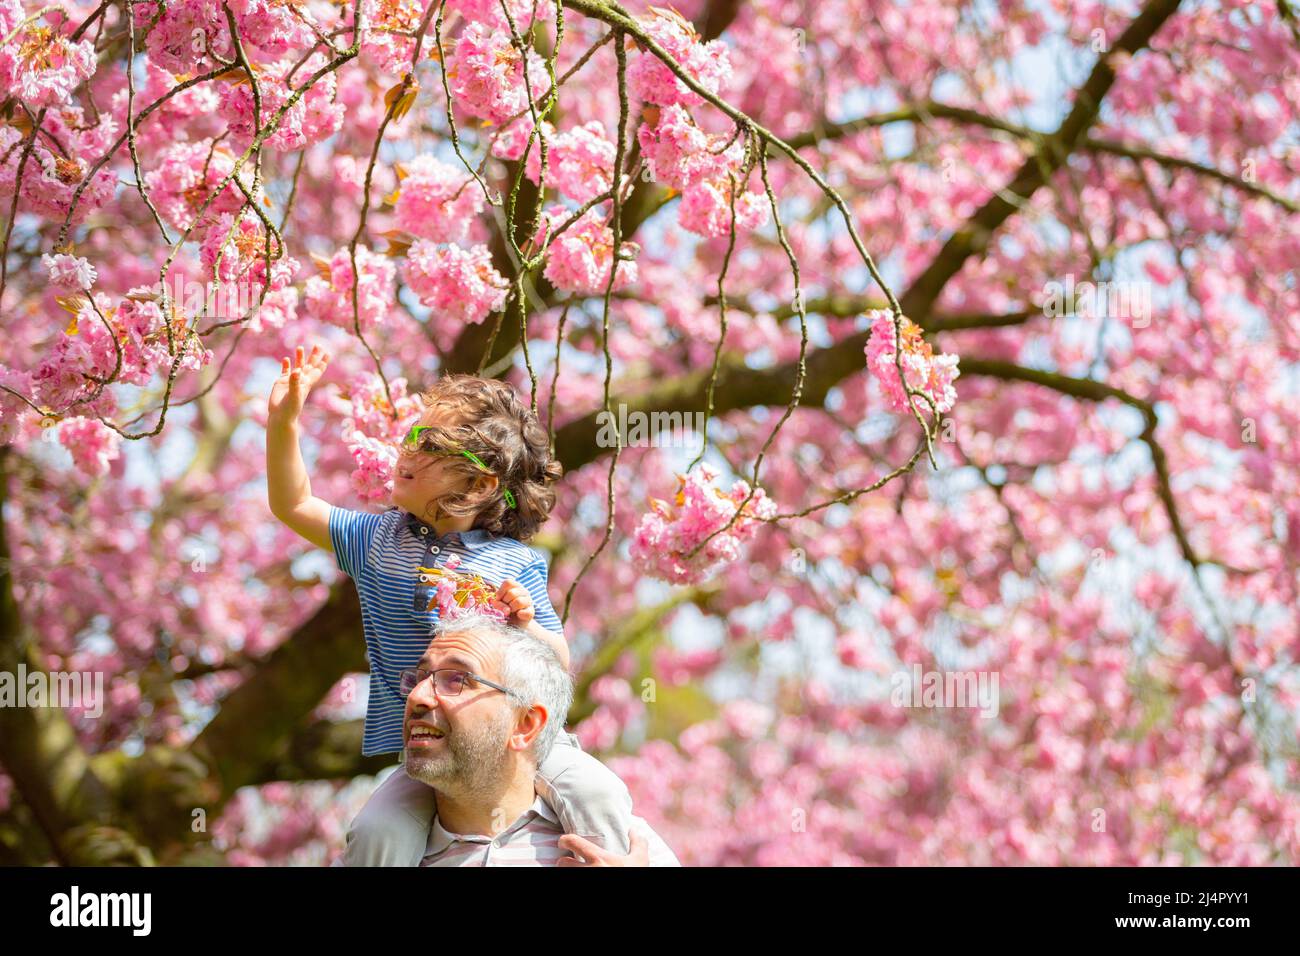 Birmingham, Royaume-Uni. 17th avril 2022. Isaac Stanford, trois ans, se trouve sur les épaules du père Simon pour se rapprocher de la fleur d'arbre rose dans son parc local de Birmingham, au Royaume-Uni. Crédit : Peter Lophan/Alay Live News Banque D'Images